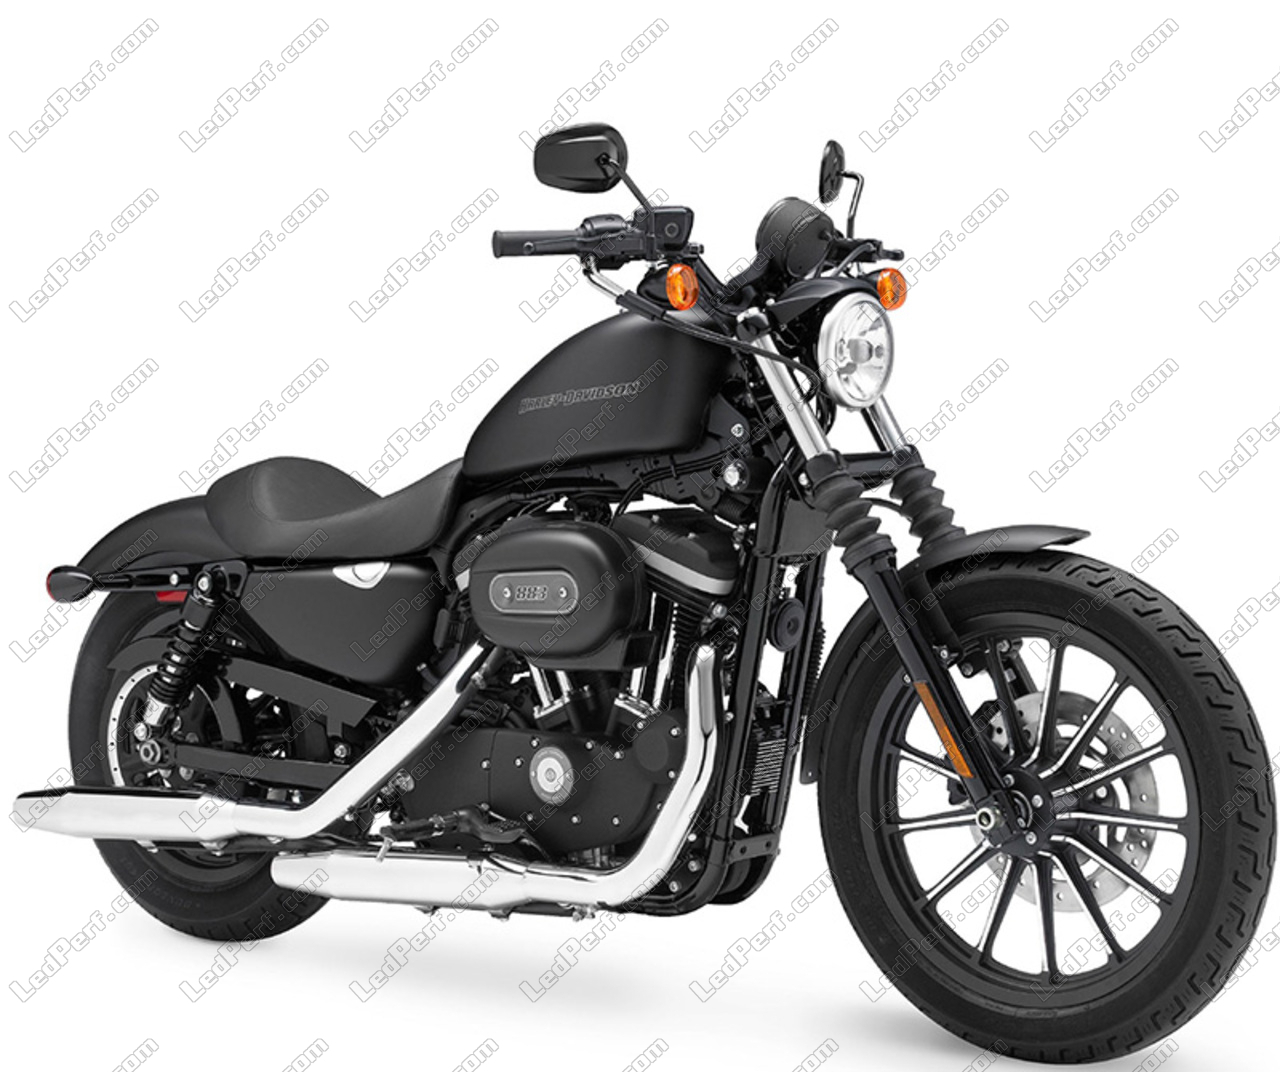 Leche papi modelo Kit Bi Xenón HID 35W o 55W para Harley-Davidson Iron 883 (2007 - 2015) -  GARANTÍA DE POR VIDA